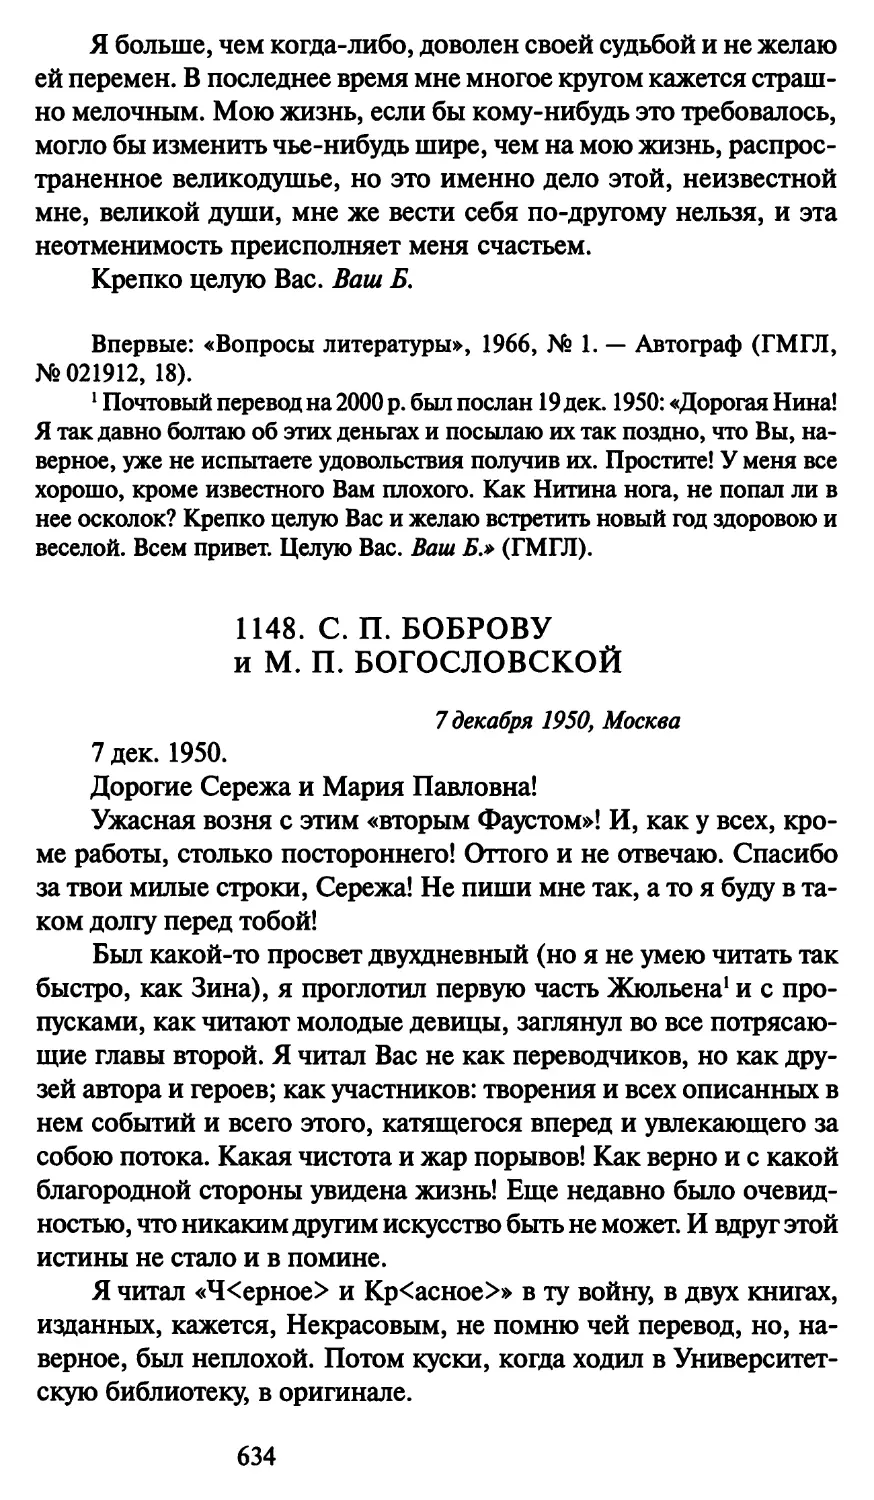 1148. С. П. Боброву и М. П. Богословской 7 декабря 1950